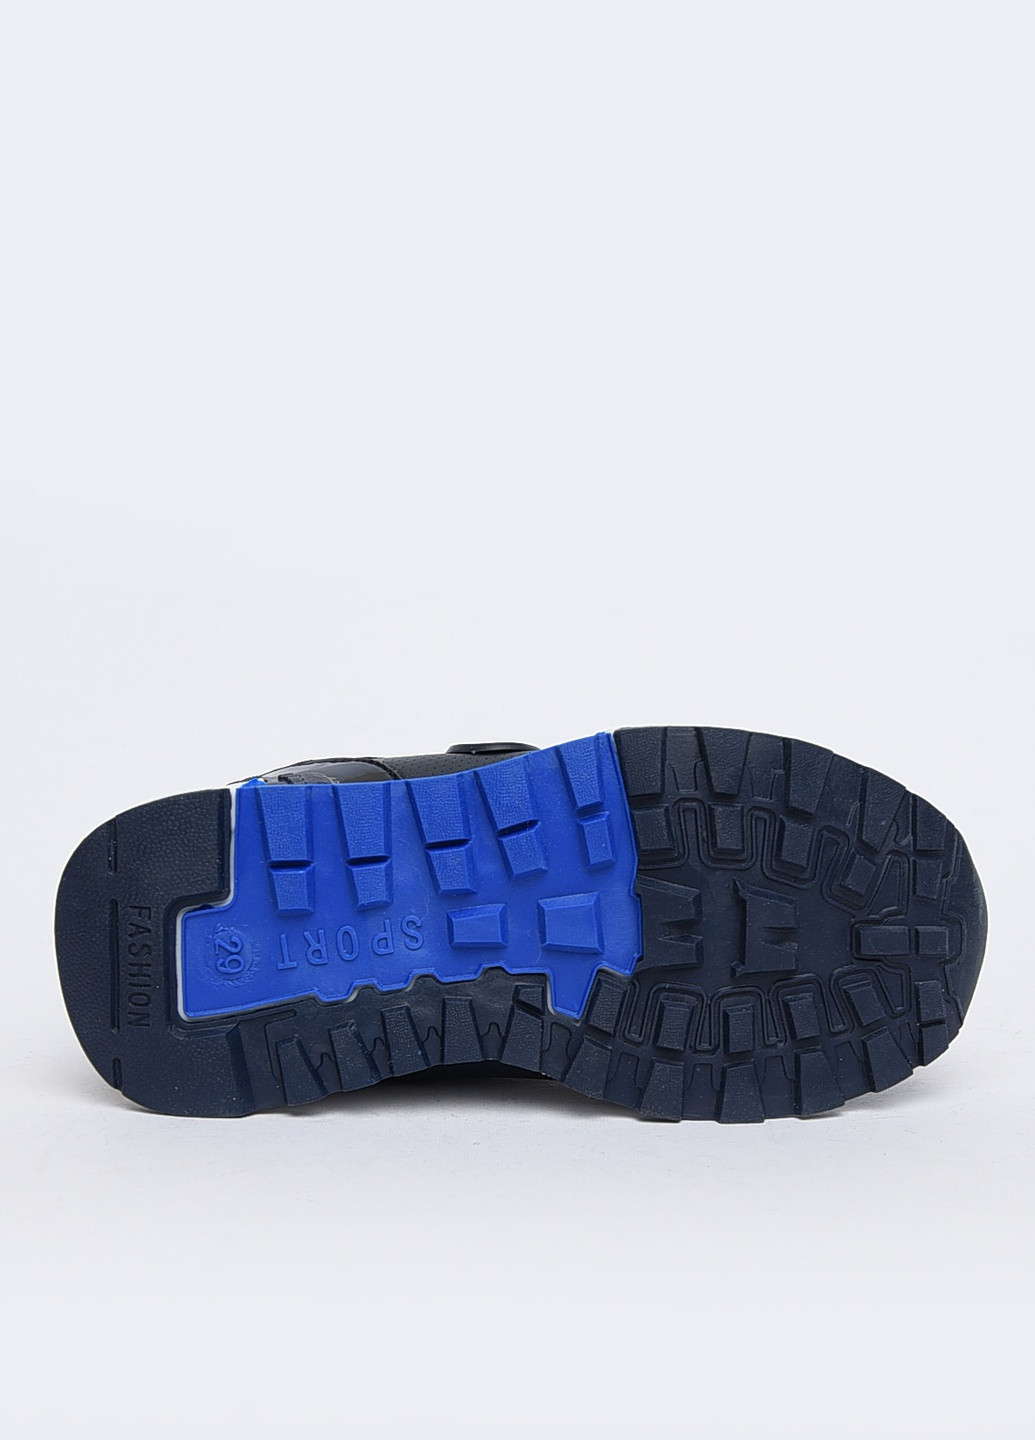 Темно-синие демисезонные кроссовки детские для мальчика на липучке темно-синие Let's Shop